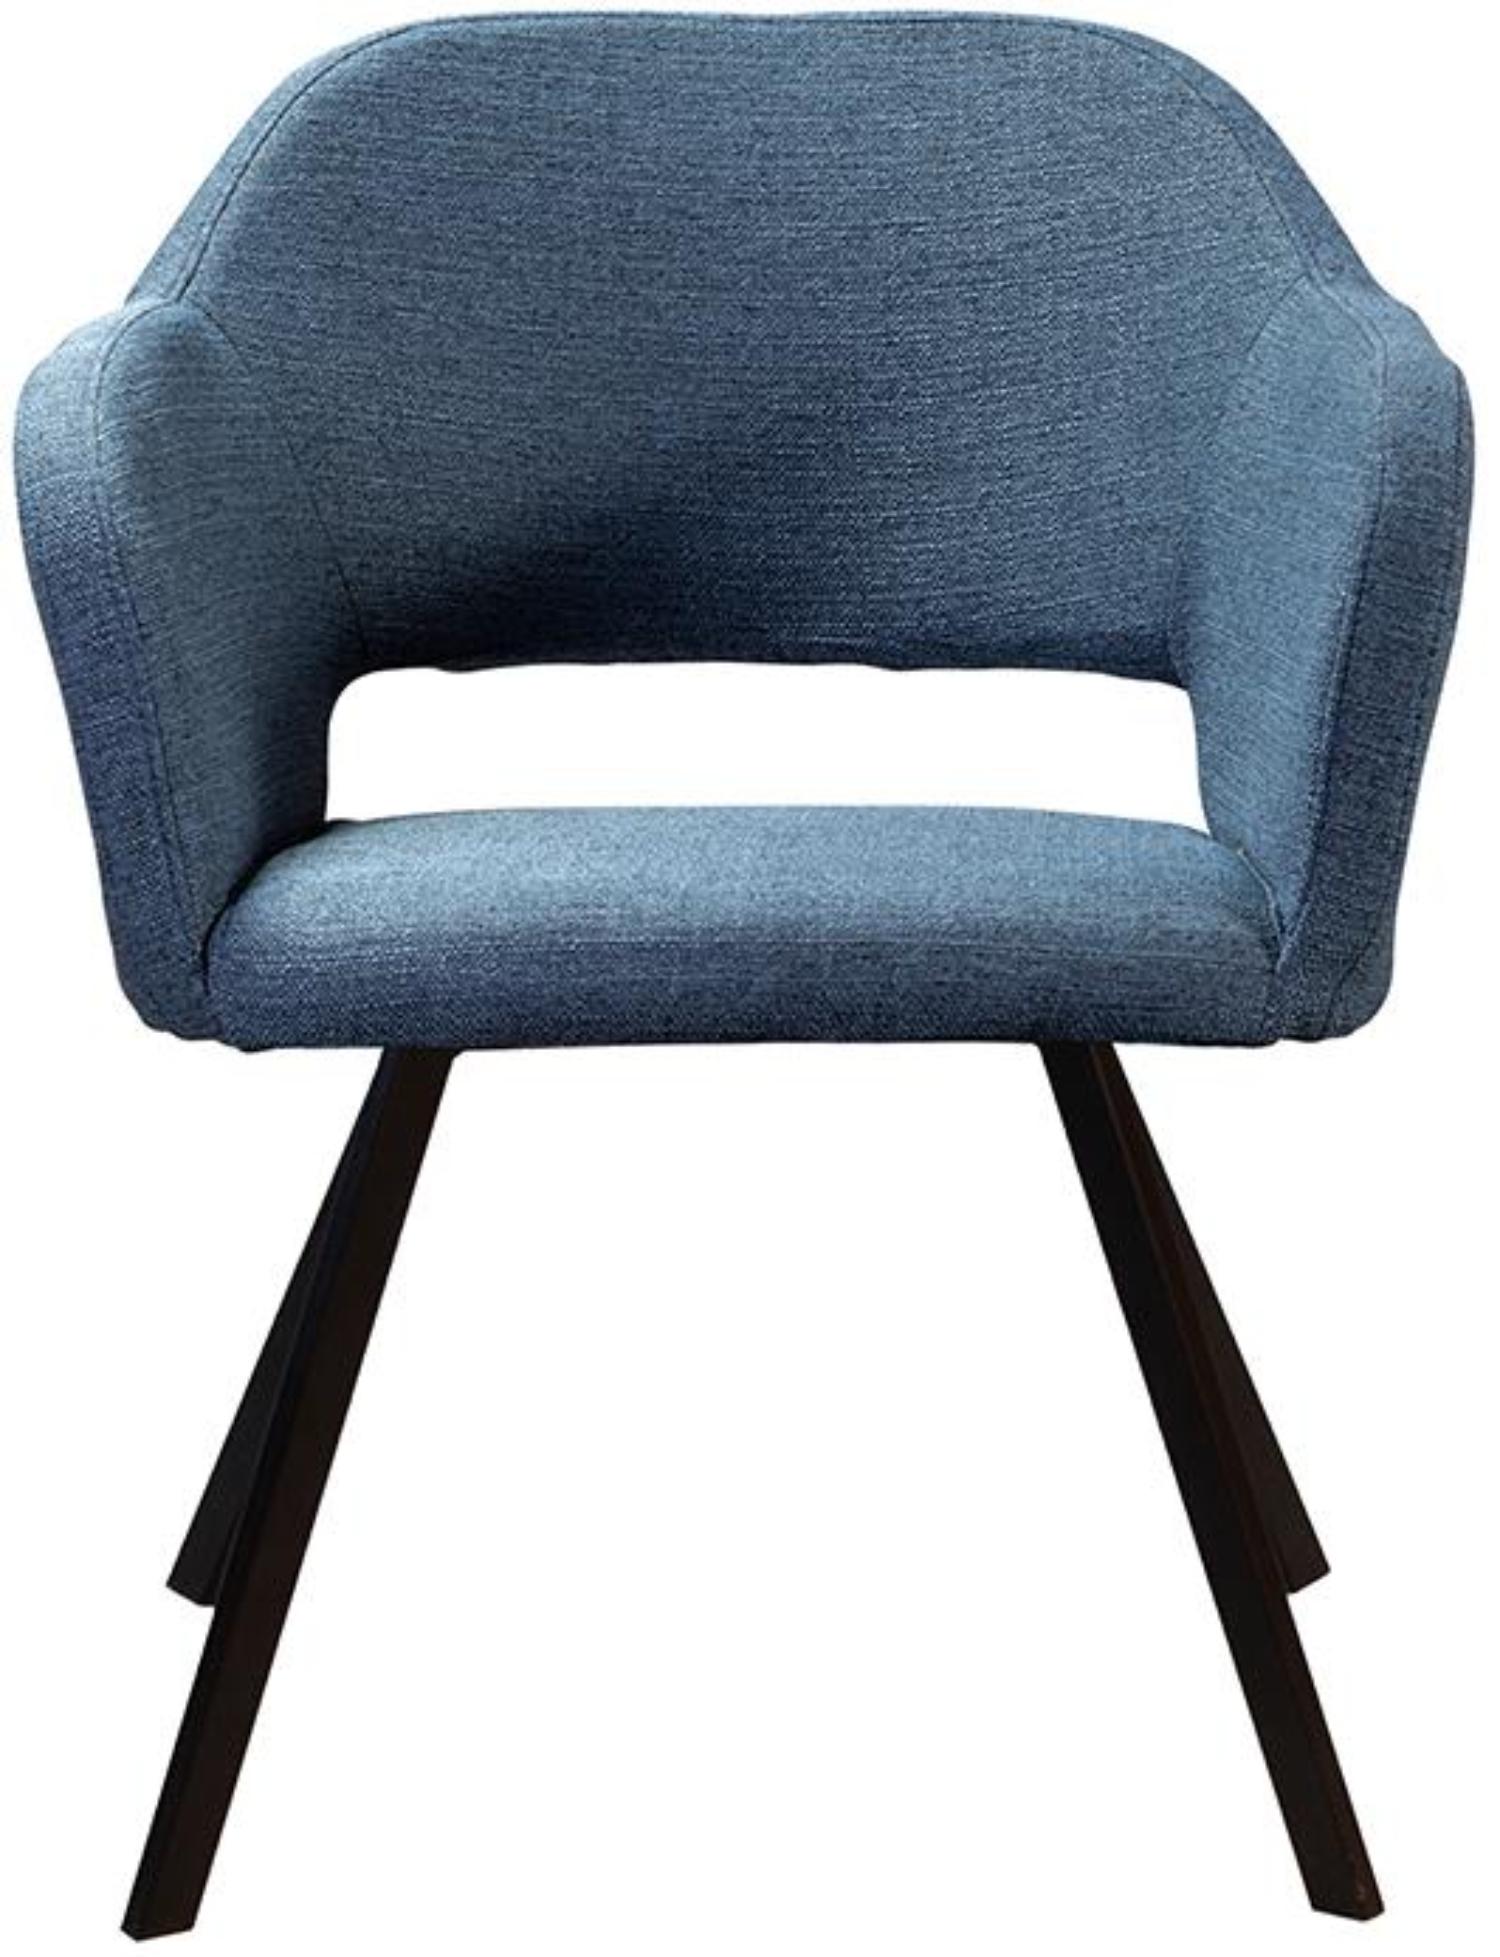 Кресло R-Home Oscar Arki, Сканди, размер 60x59x77.5 см, цвет: Блю Арт(41021851_БлюАртАрки)41021851_БлюАртАрки